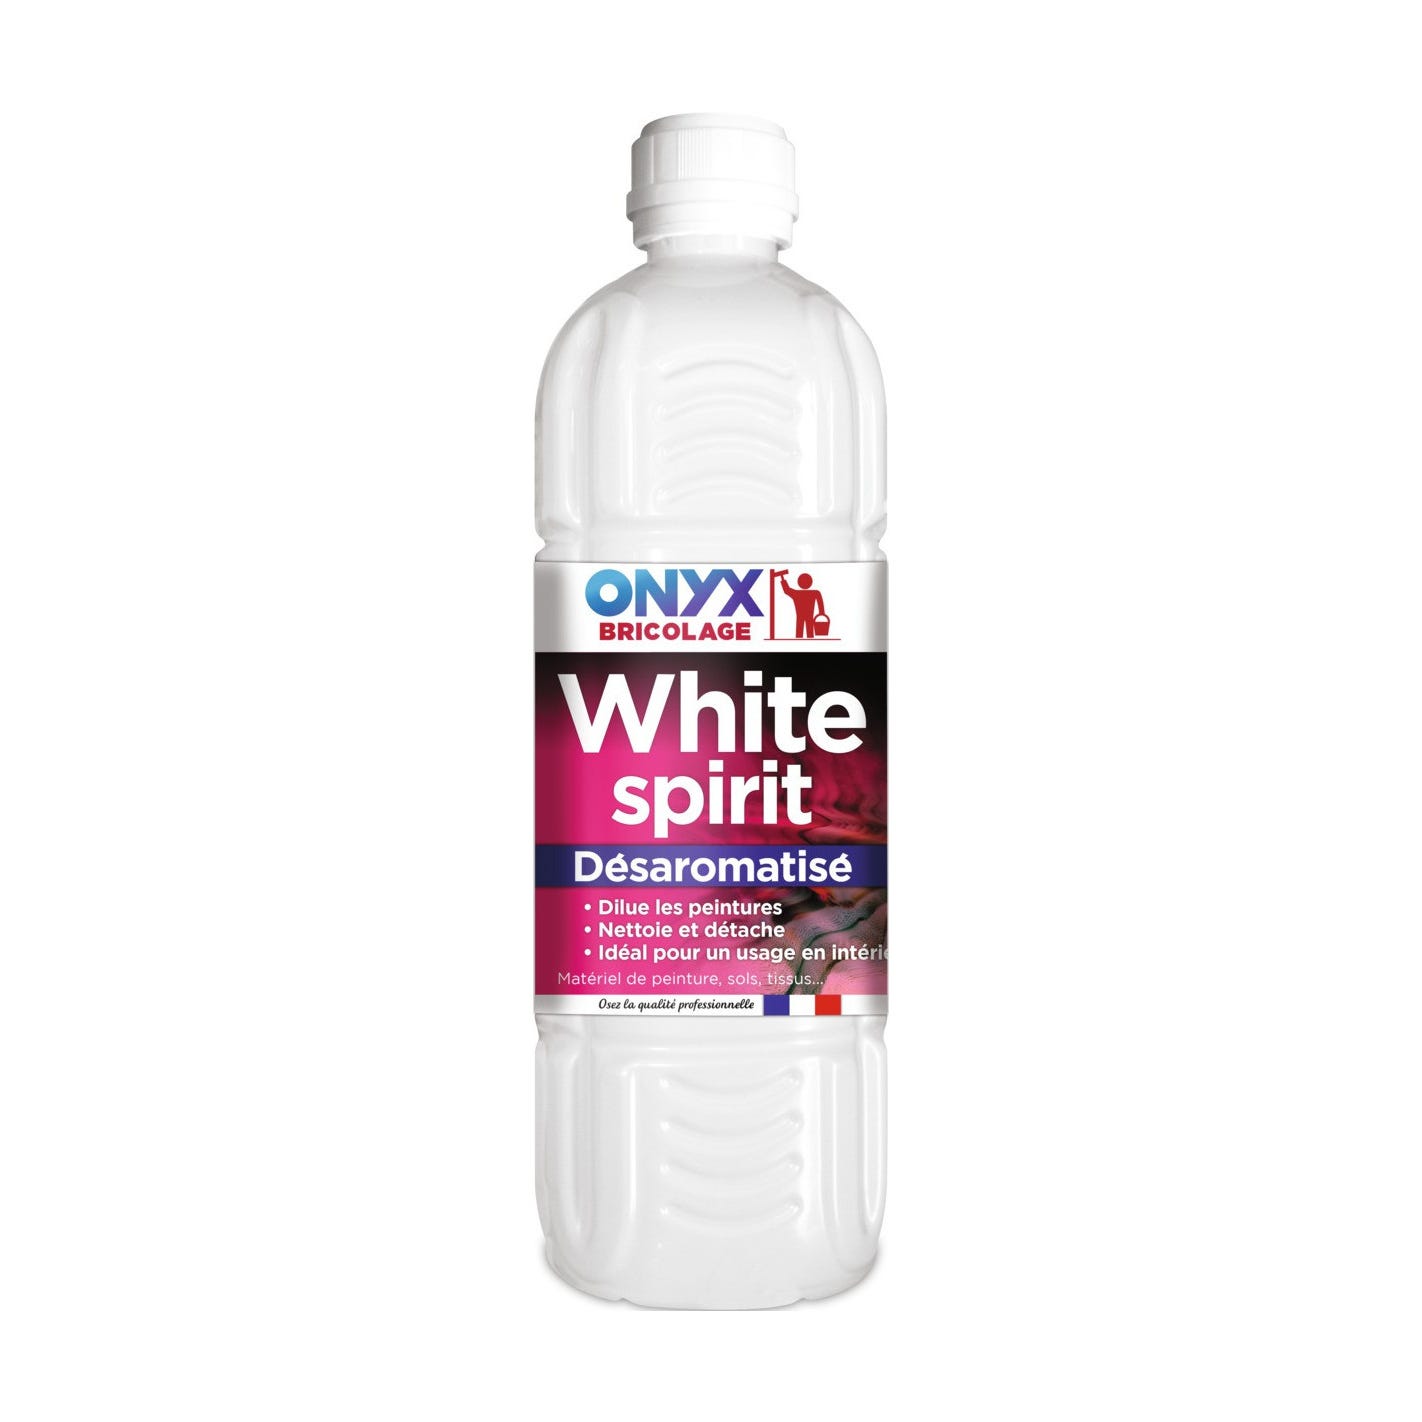 White spirit désaromatisé bouteille 1 litre - ONYX 0